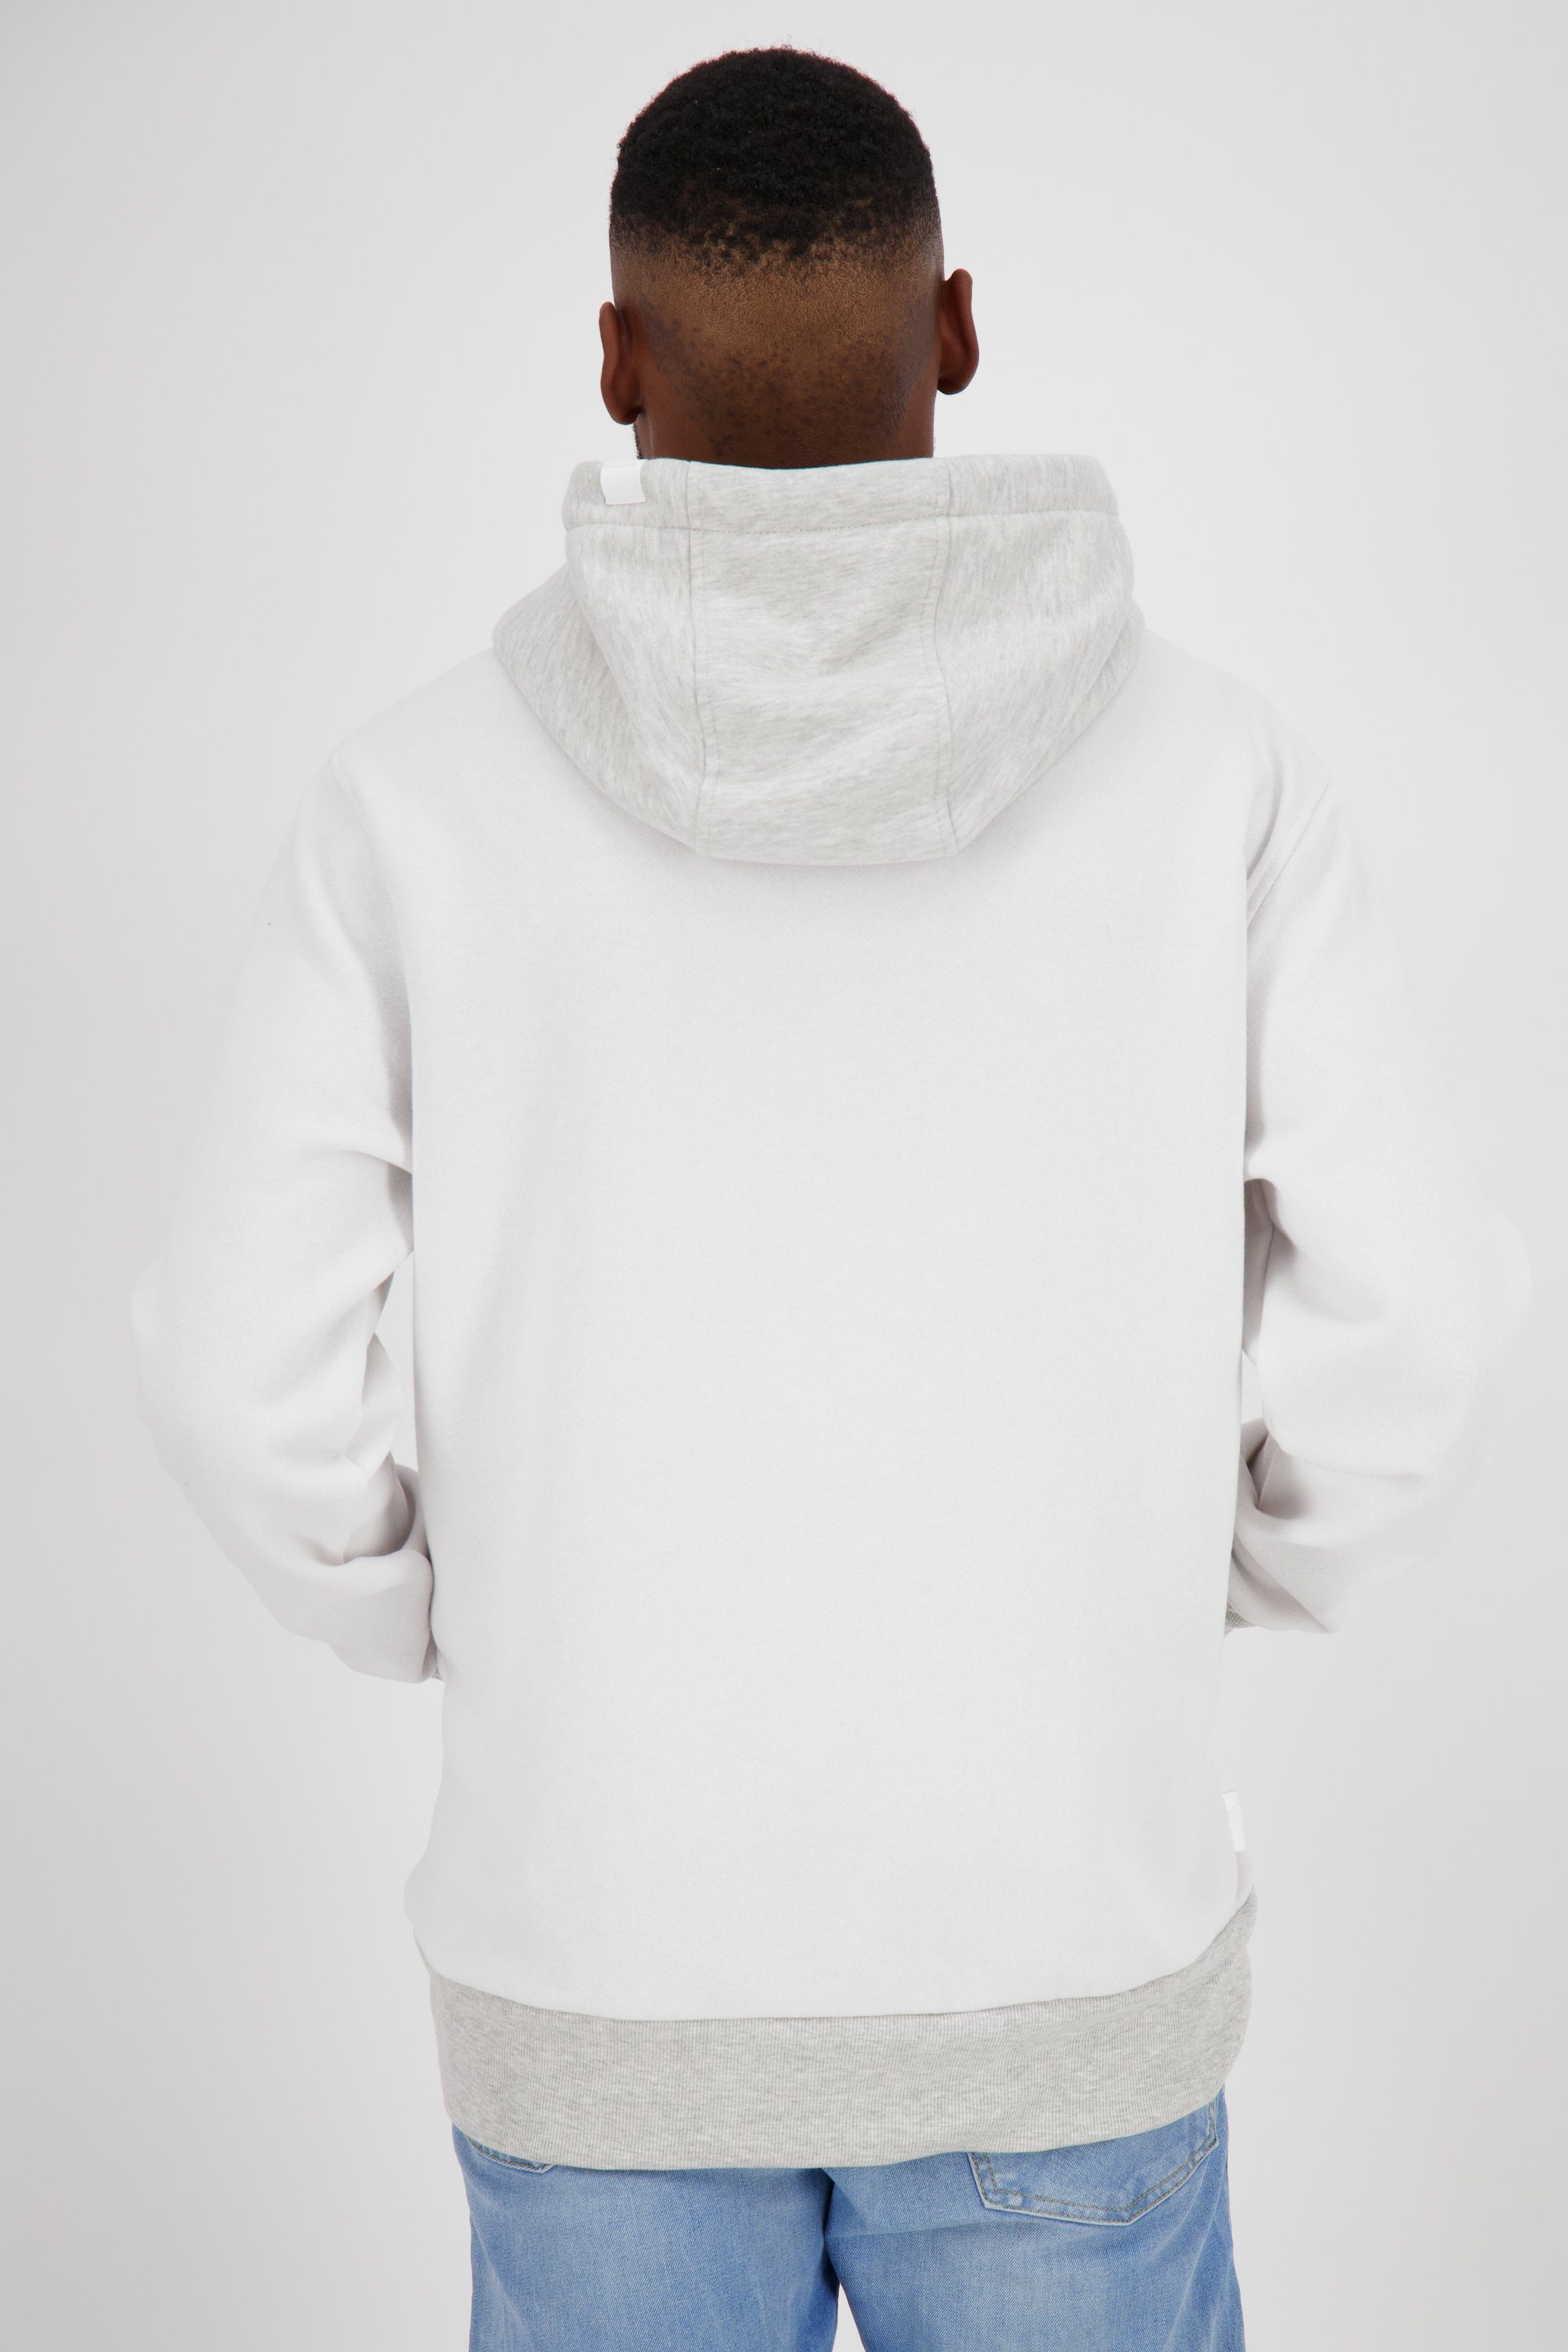 Alife & Kickin Sweat Herren Sweatshirt MatteoAK Kapuzensweatshirt white Kapuzensweatshirt